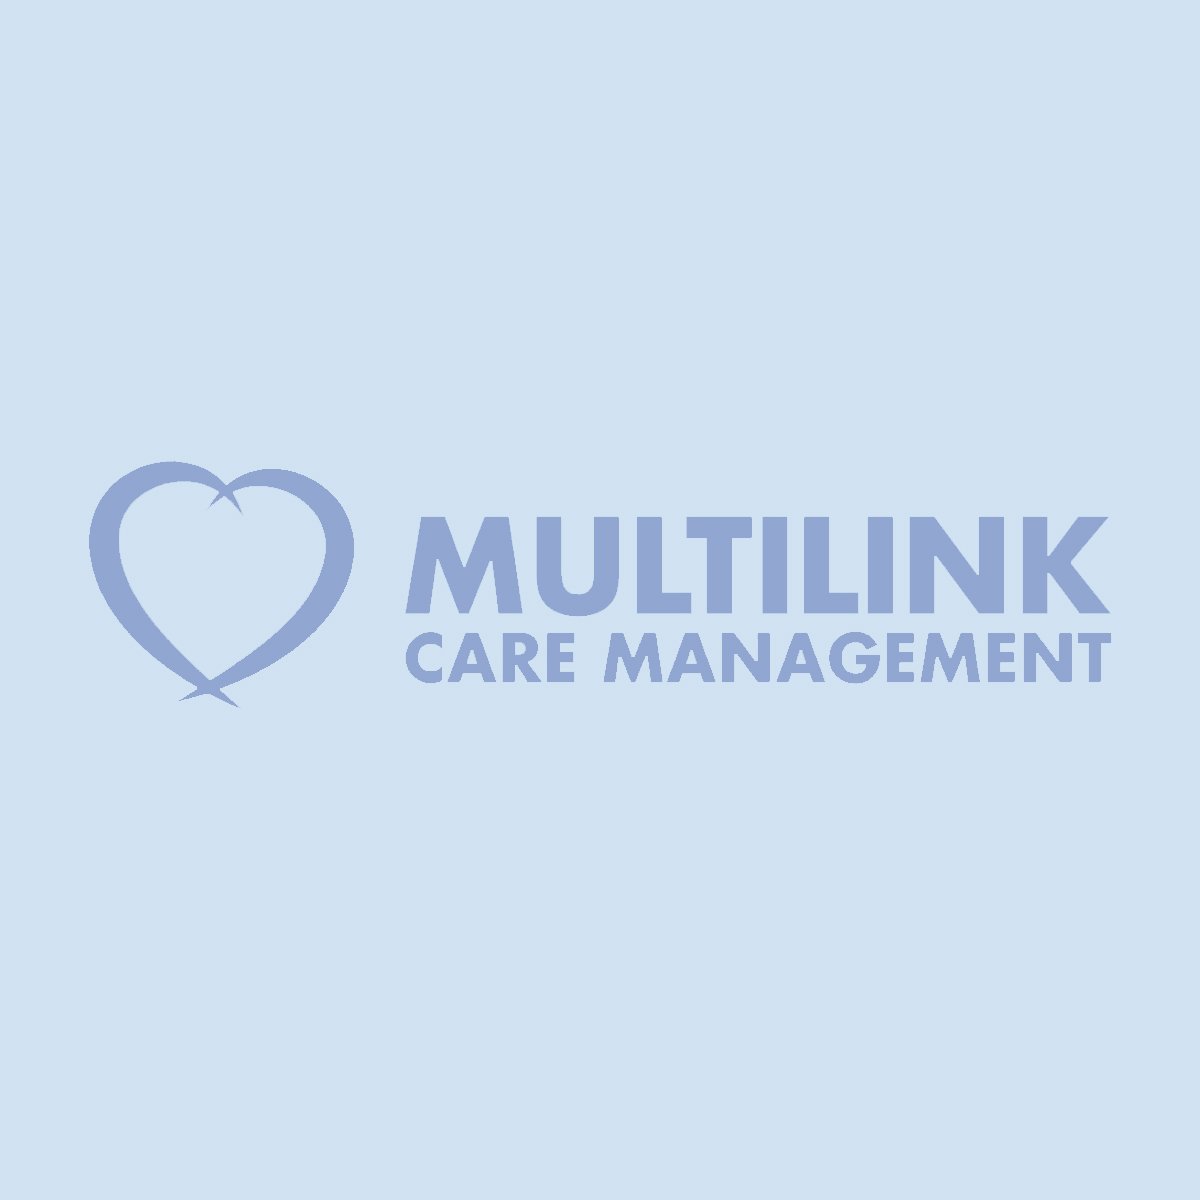 Multilink_logo_blue